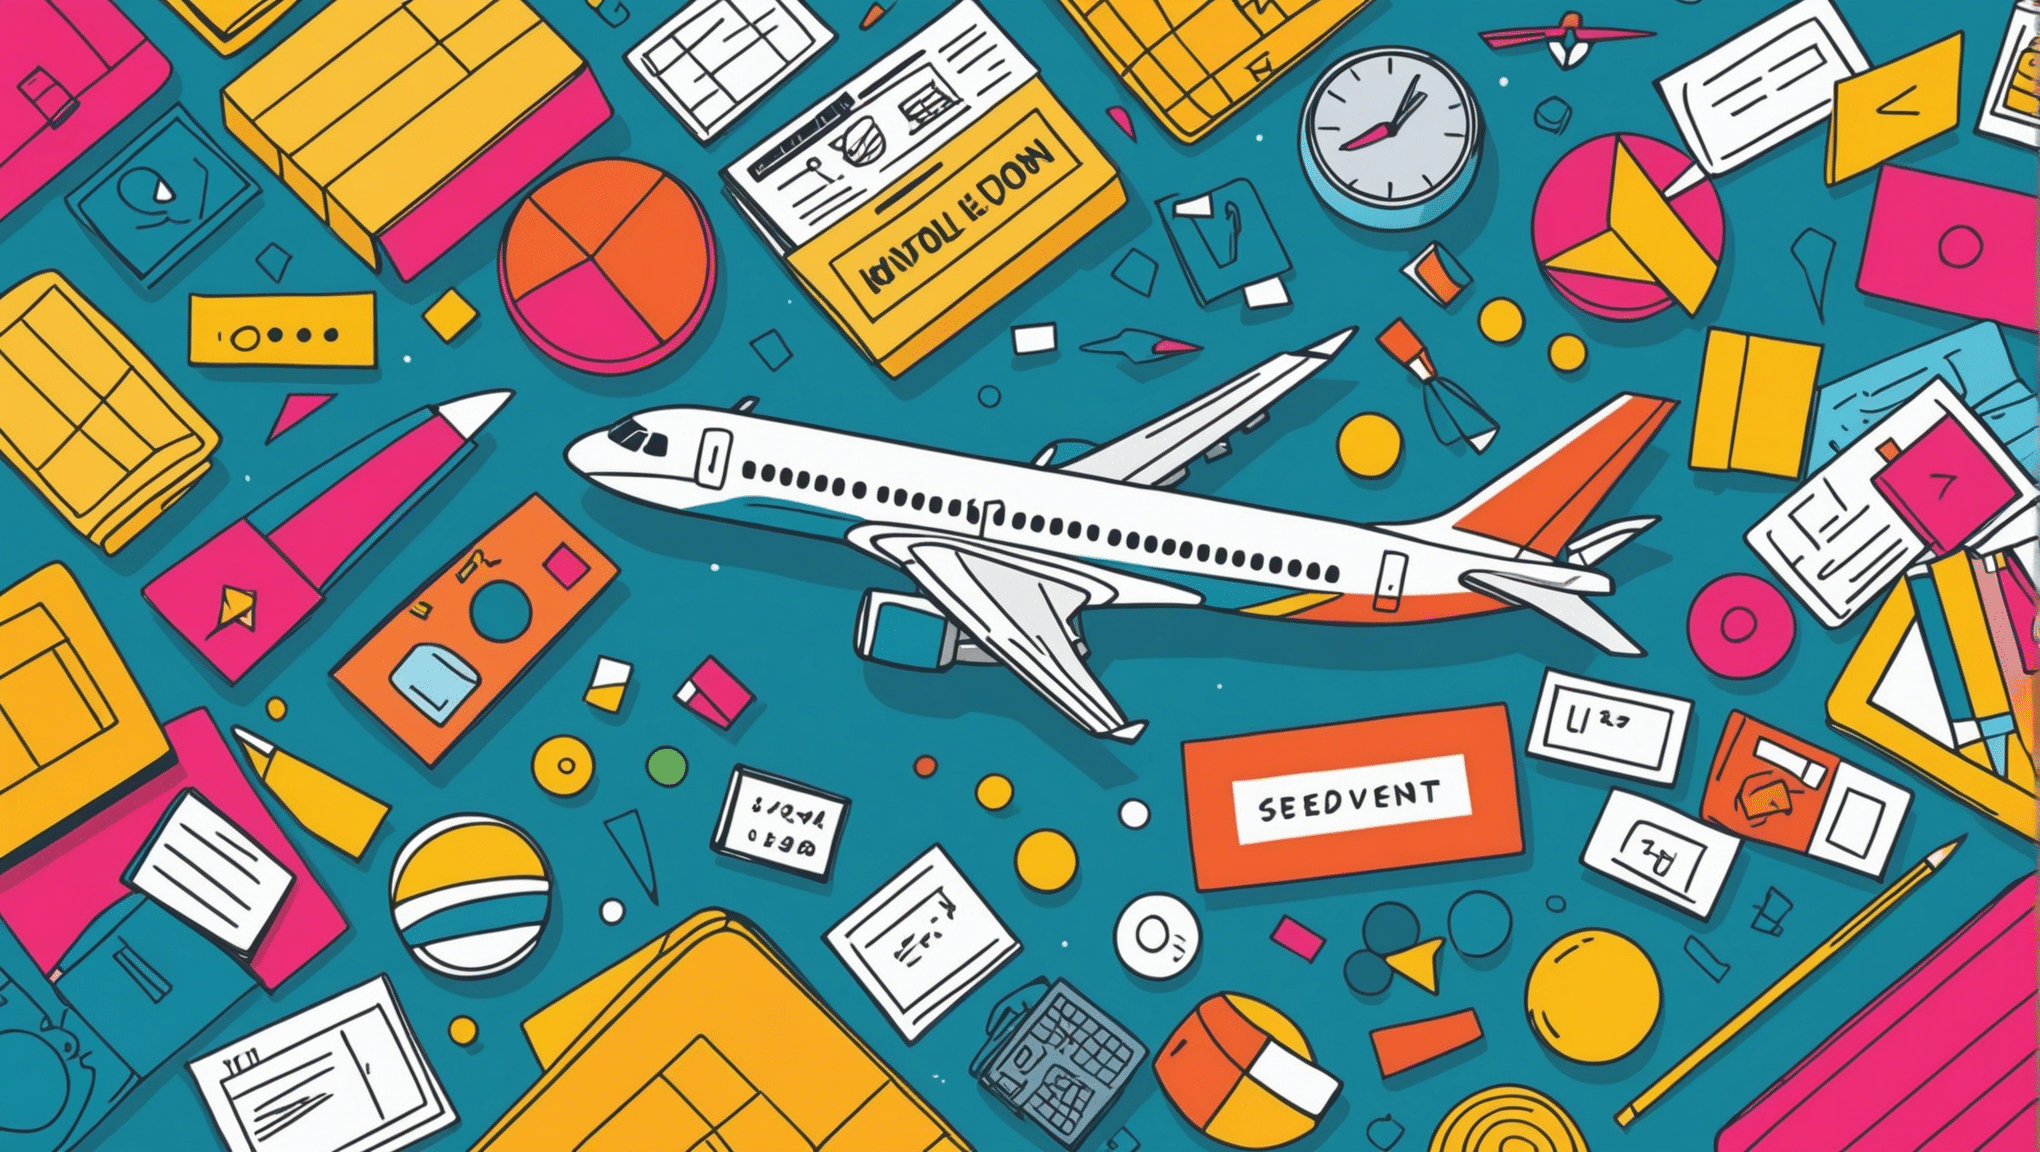 découvrez quand acheter un billet d'avion au meilleur moment pour économiser sur vos voyages avec nos conseils pratiques.